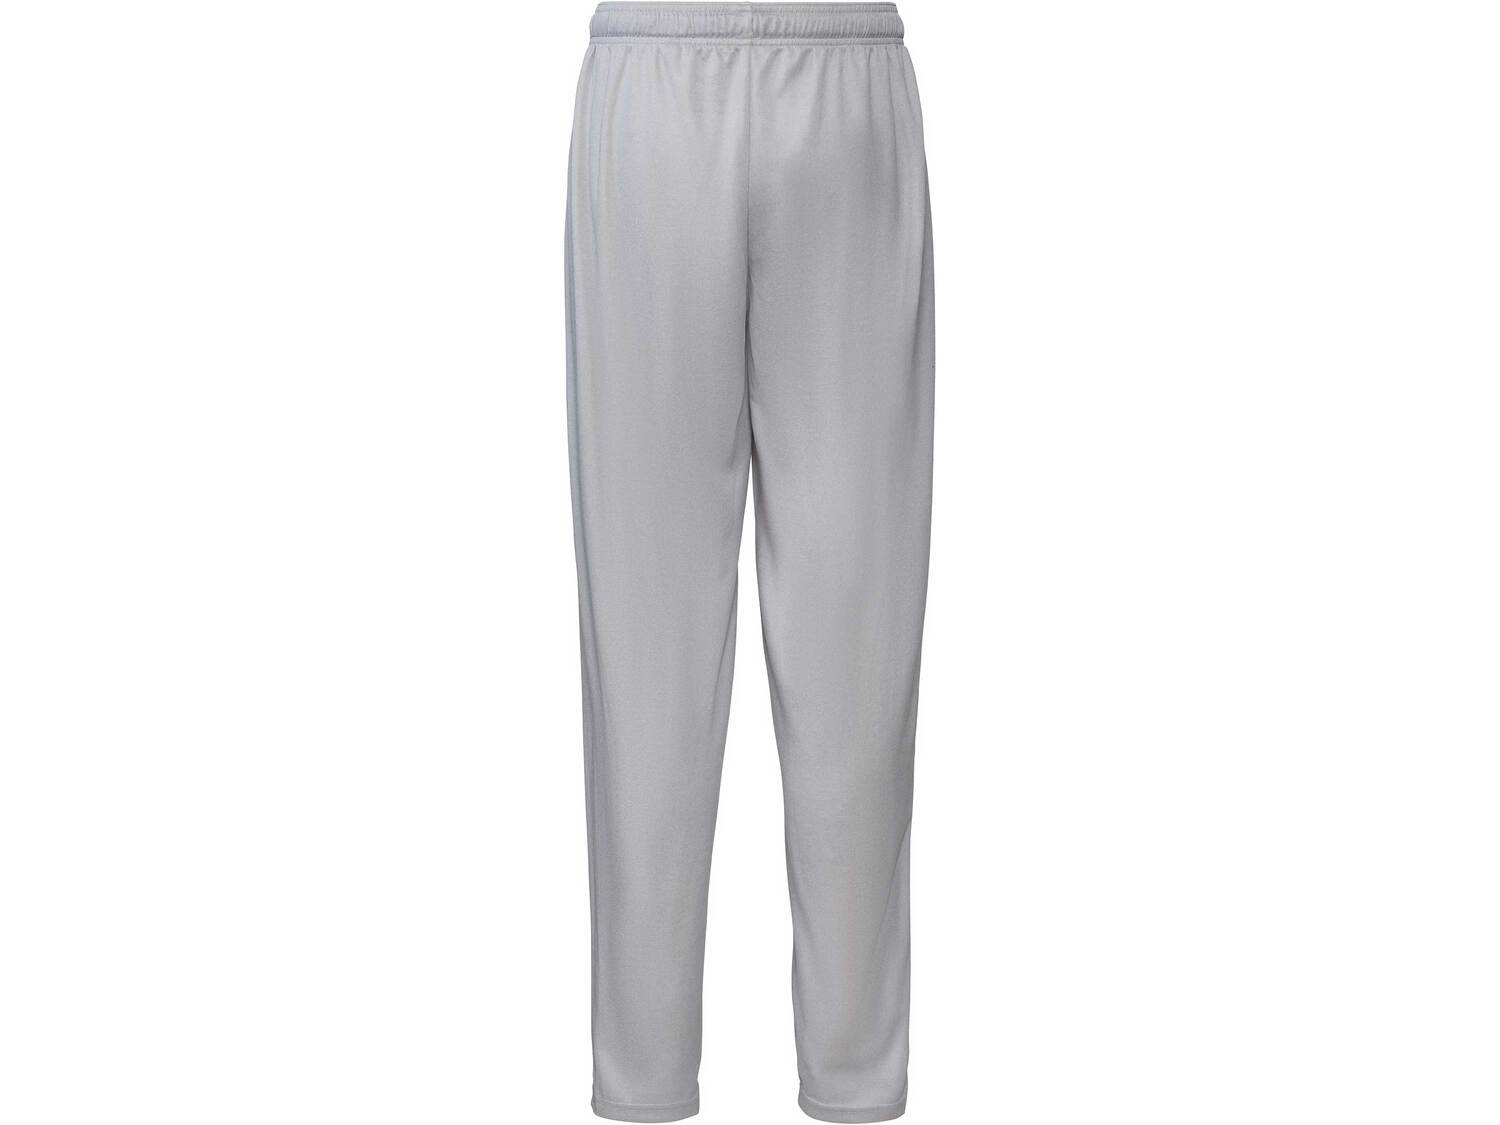 Spodnie sportowe Crivit, cena 24,99 PLN 
męskie 
- rozmiary: M-XL
- wszyte kieszenie ...